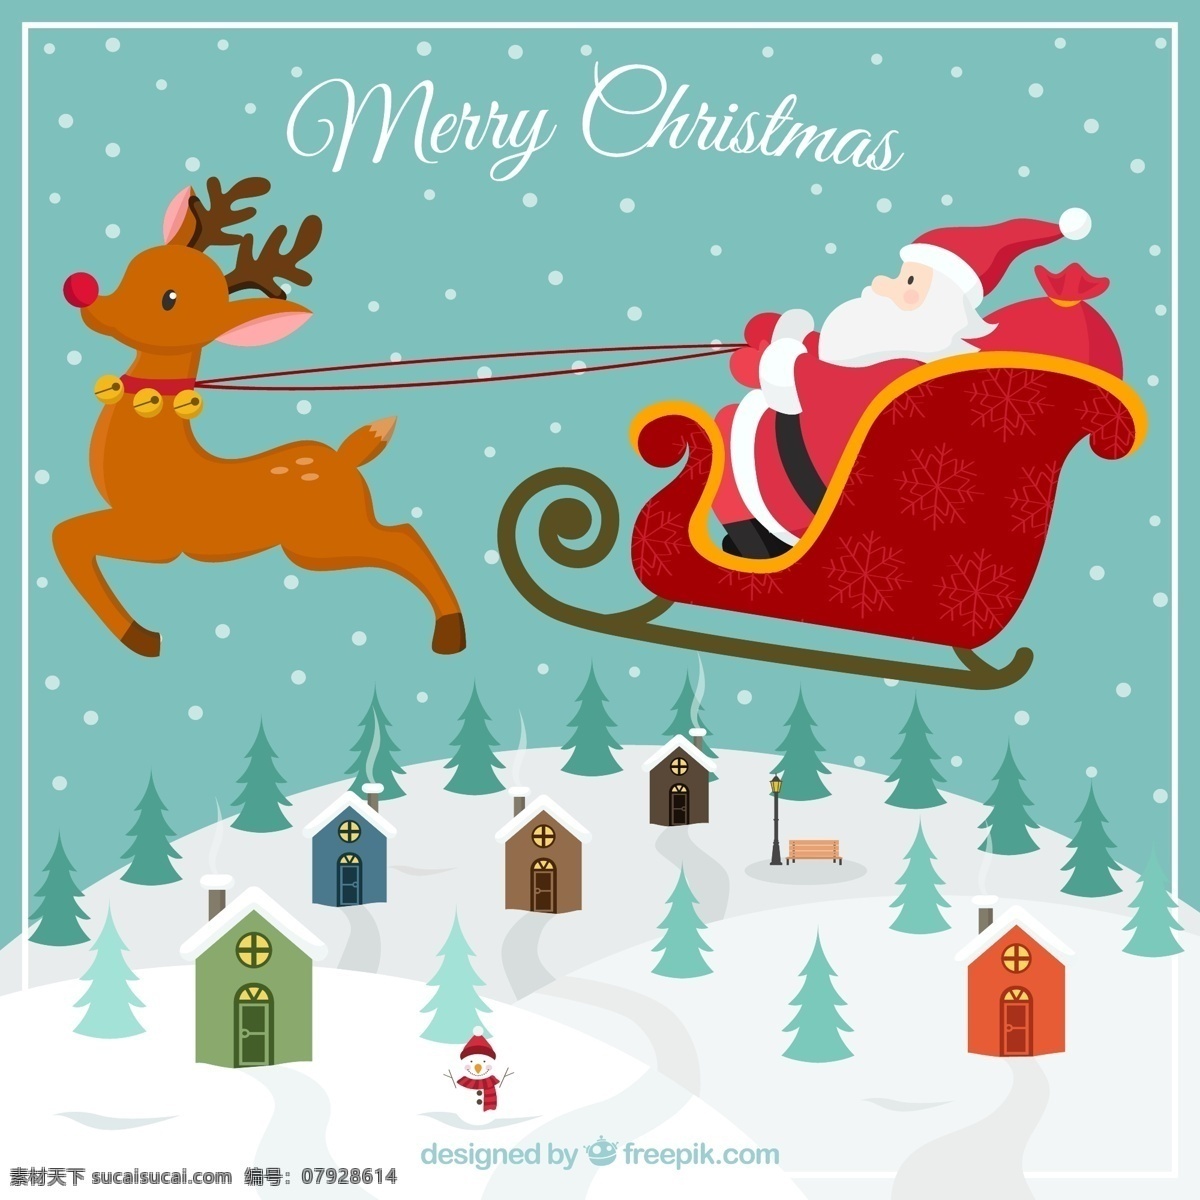 圣诞老人 驯鹿 卡片 圣诞节 快乐 新的一年 快活 冬季 地势平坦 圣诞 庆典 假日 新年快乐 假期 季节